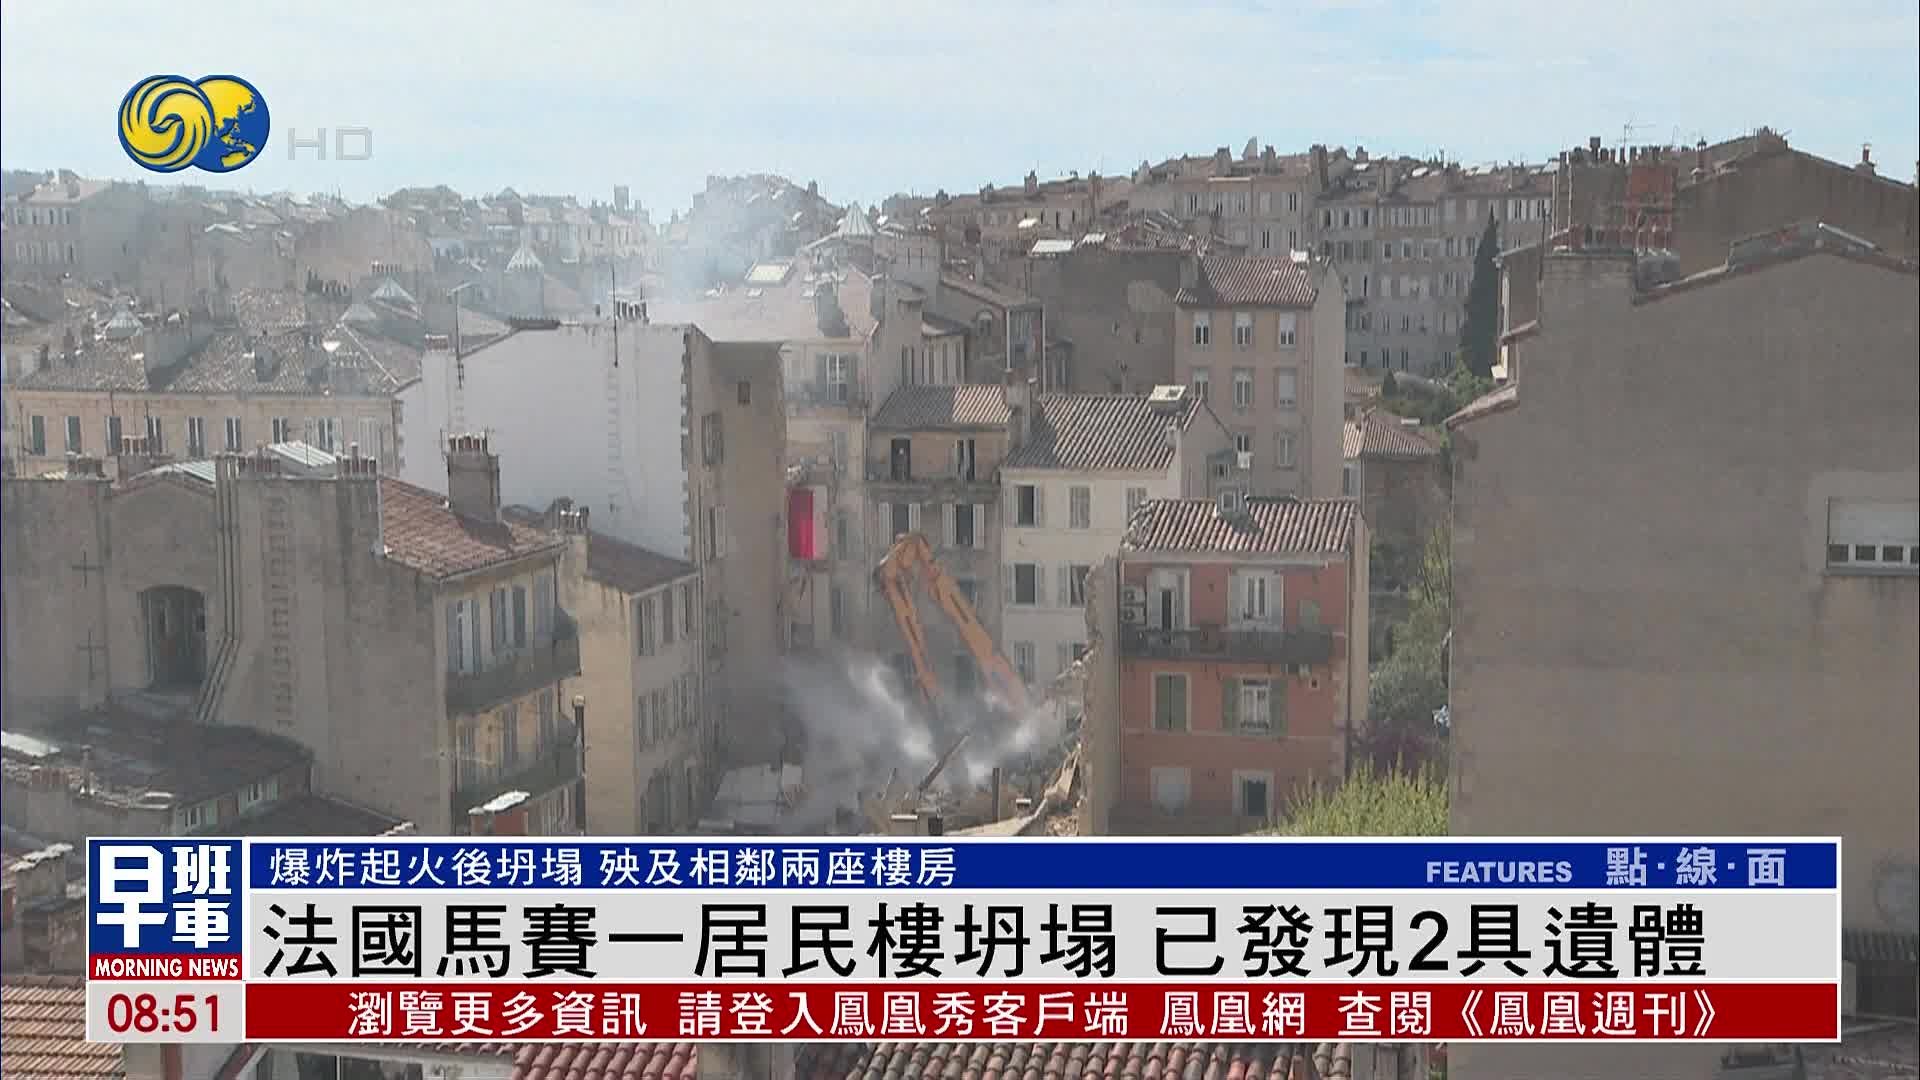 法国马赛一居民楼坍塌 已发现2具遗体